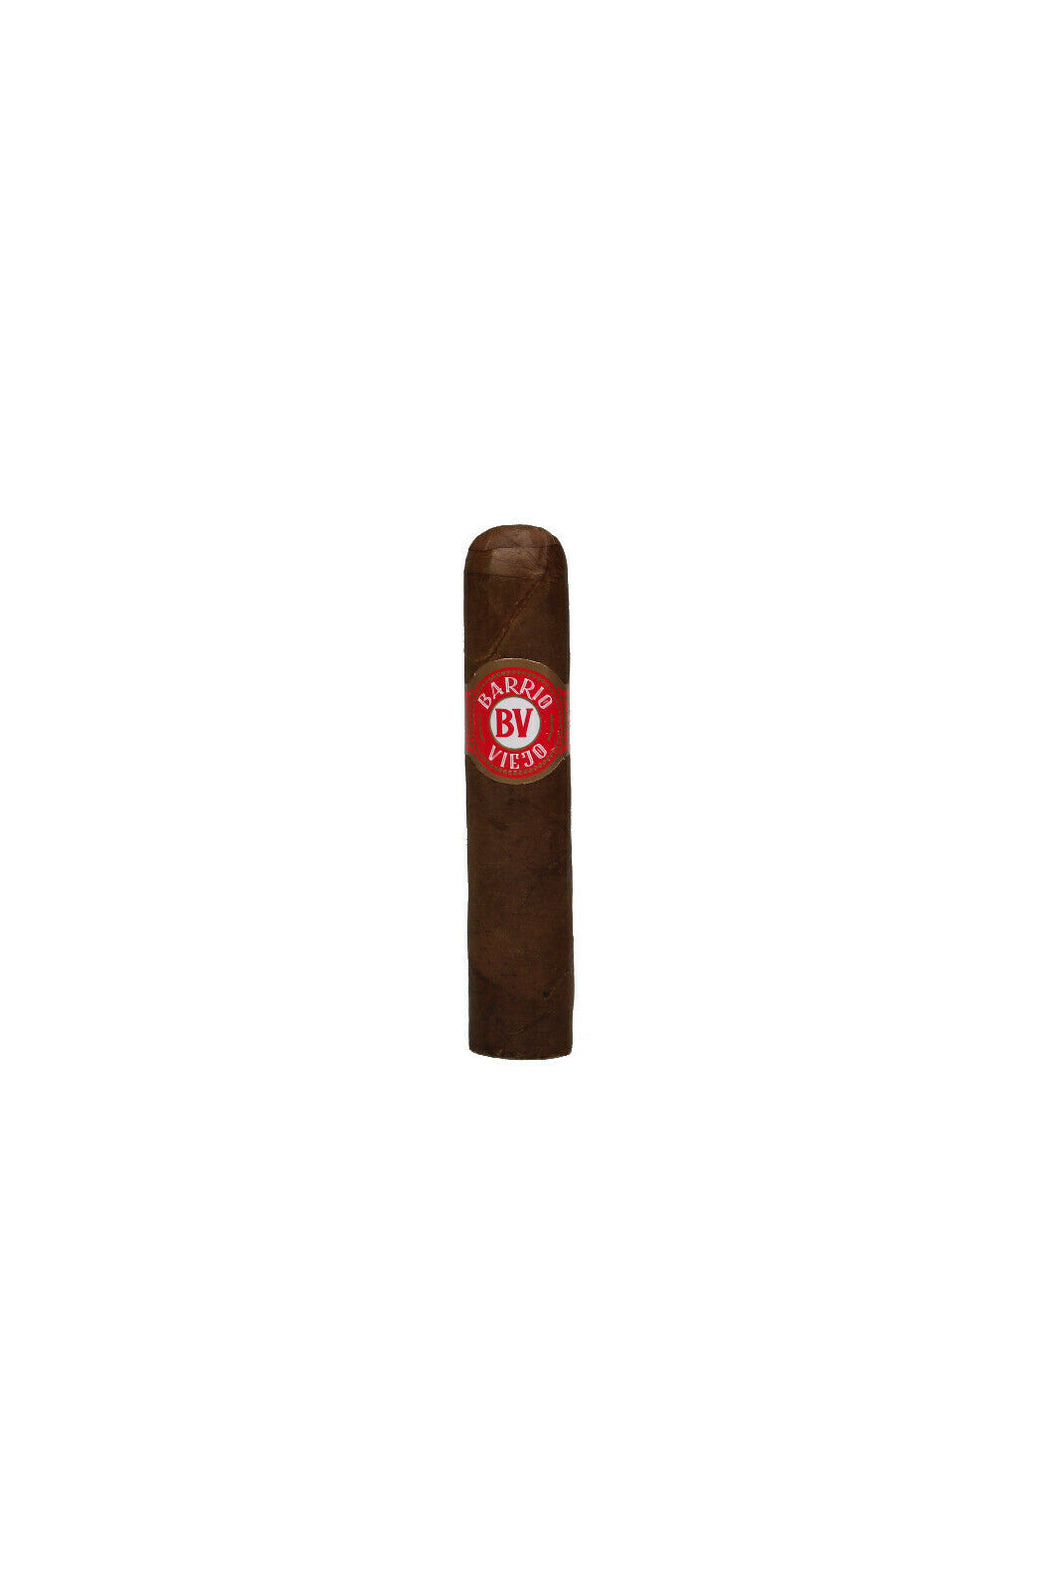 Barrio Viejo - Zigarren - Short Robusto - Honduras: wählen Sie: 5 oder 10 Stück